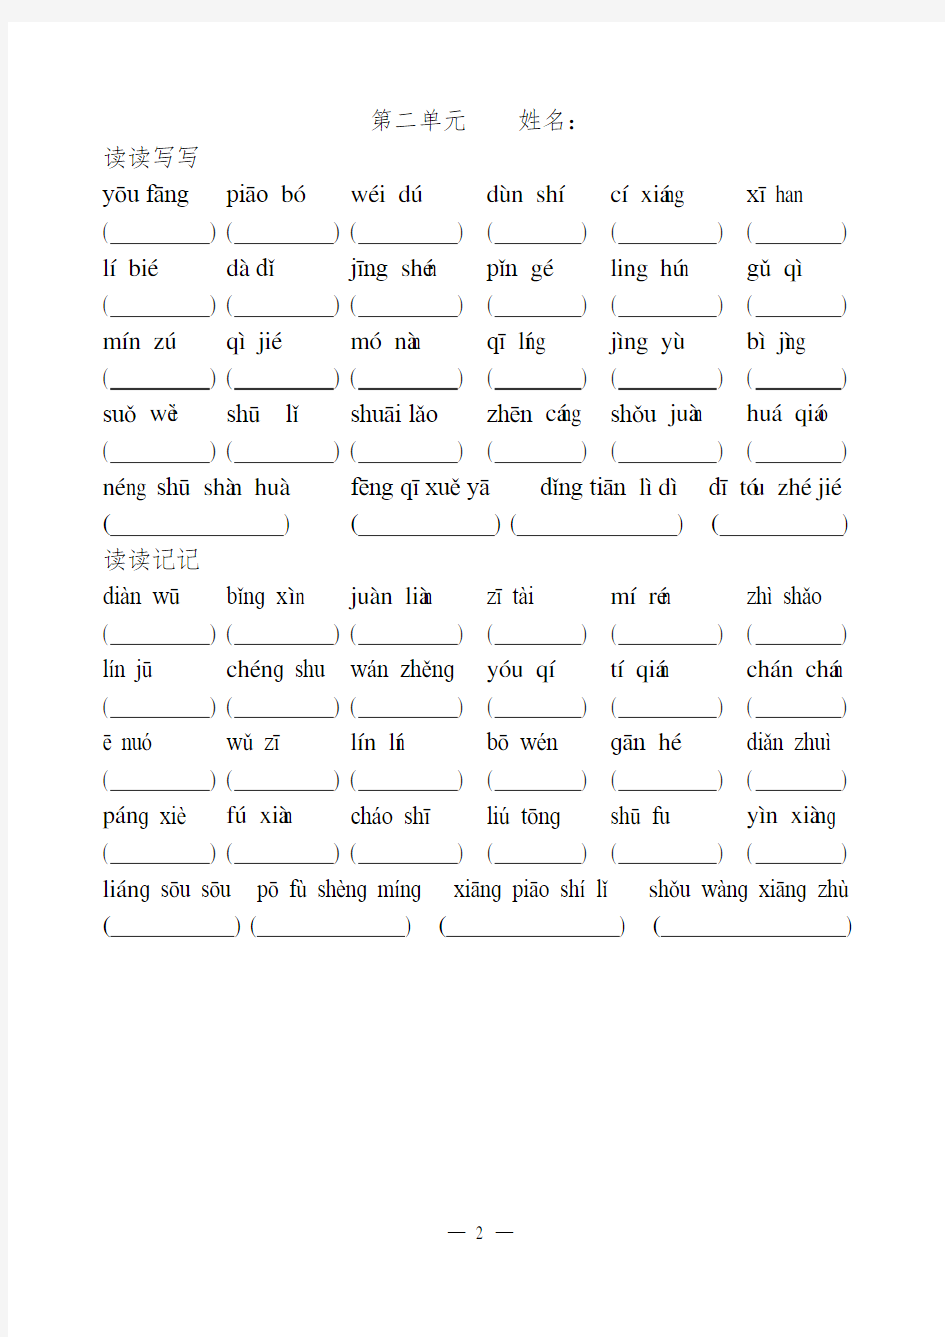 五年级语文上册看拼音写词语8个单元